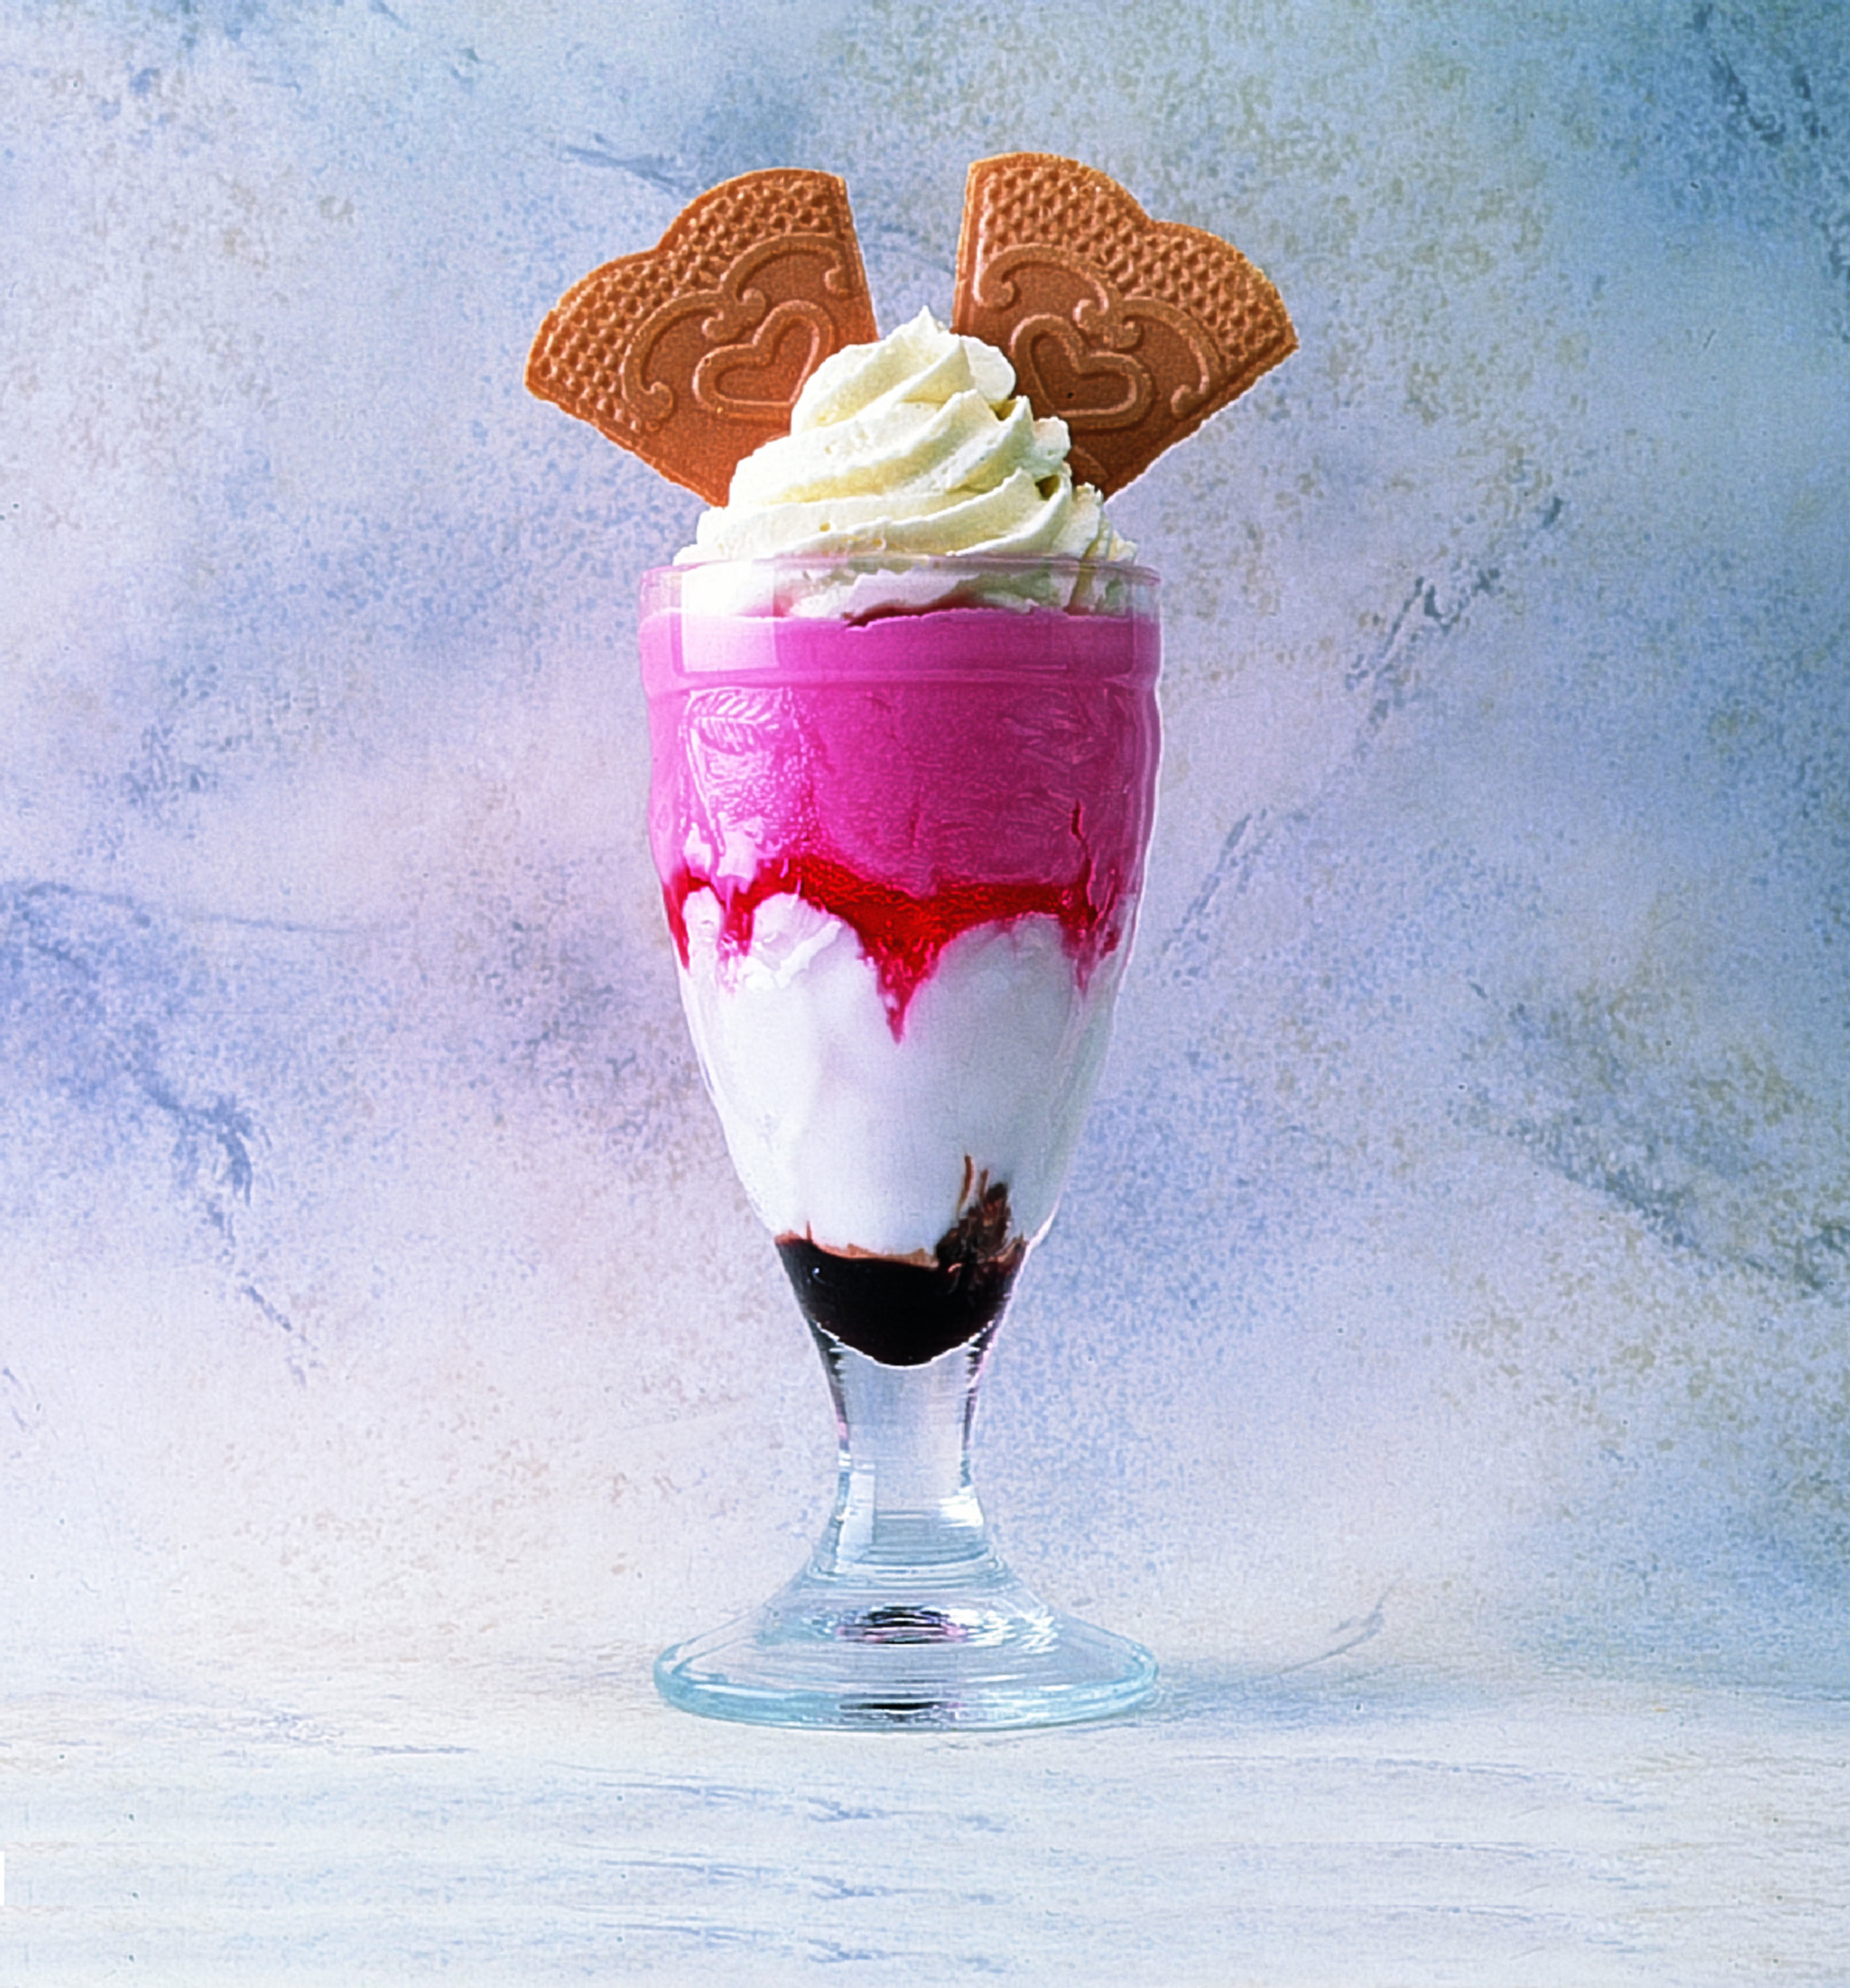 Strawberry Delight Ice Cream Sundae - Sidoli